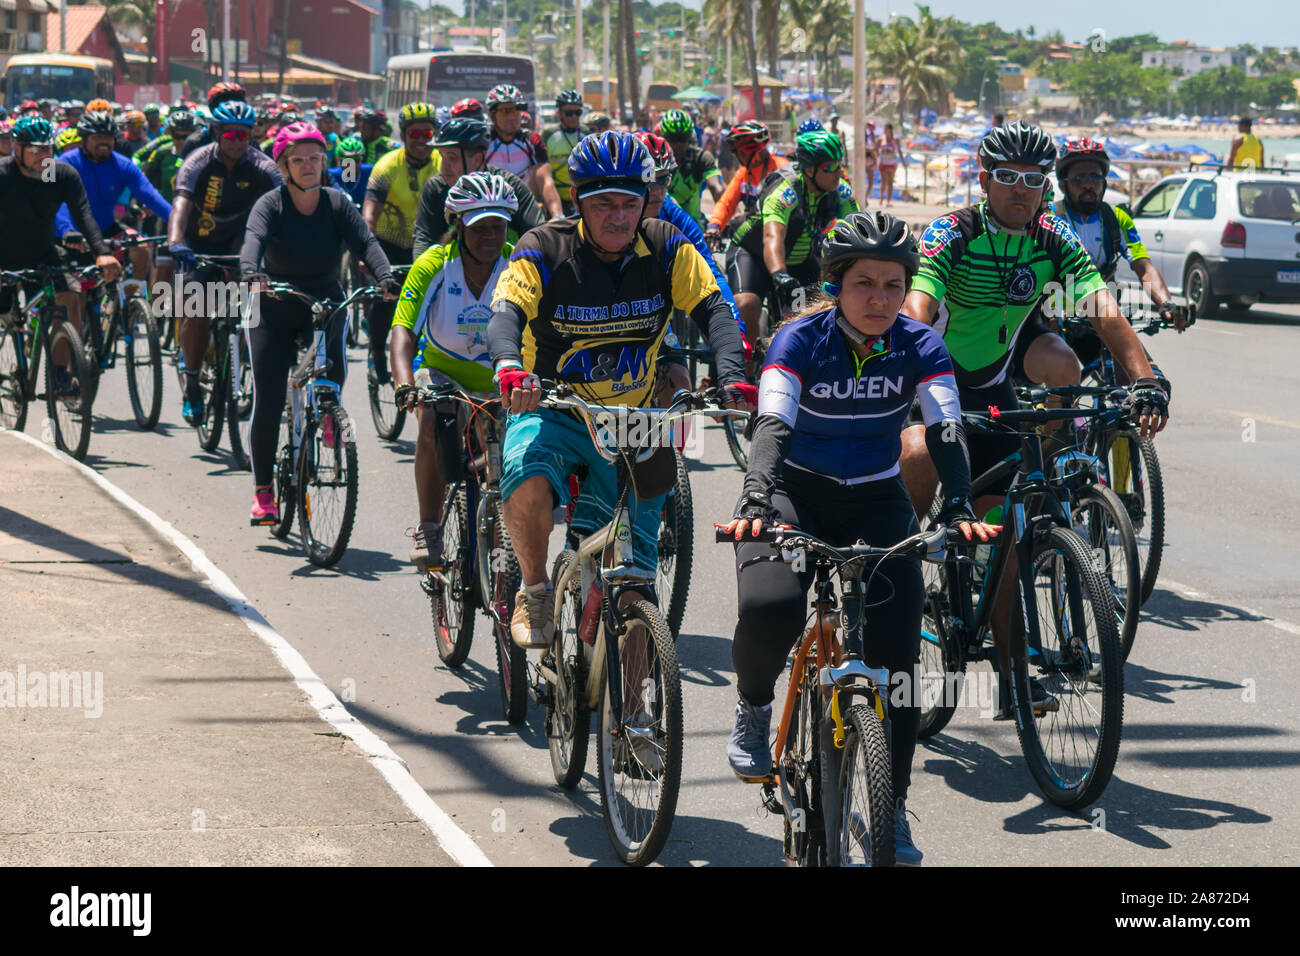 Salvador, Brasilien - 22. September 2019: Gruppe der Radfahrer auf den Straßen von itapua Nachbarschaft auf der Welt Autofreier Tag Stockfoto